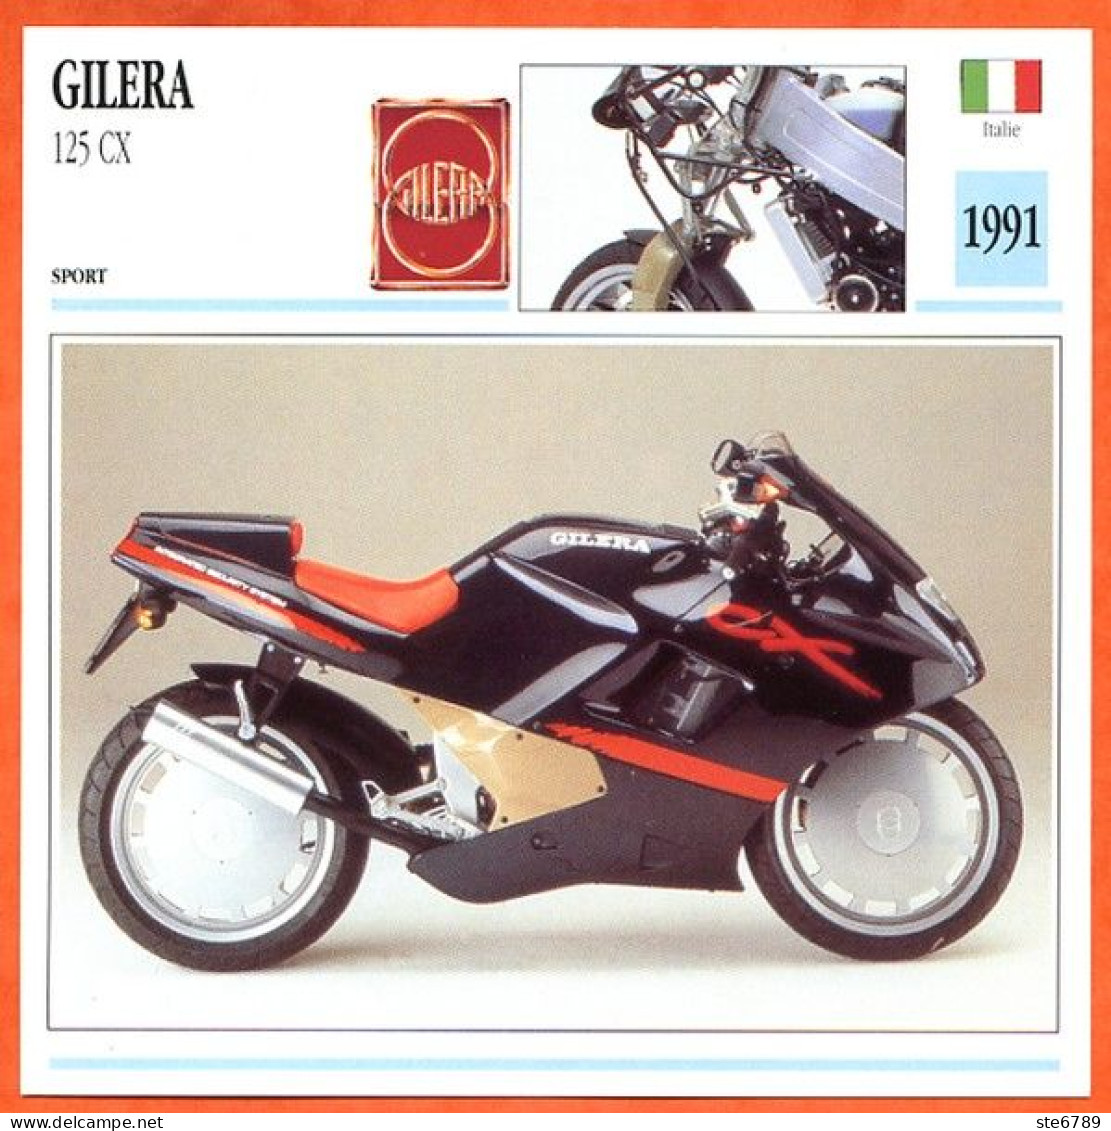 GILERA 125 CX 1991 Italie Fiche Technique Moto - Deportes